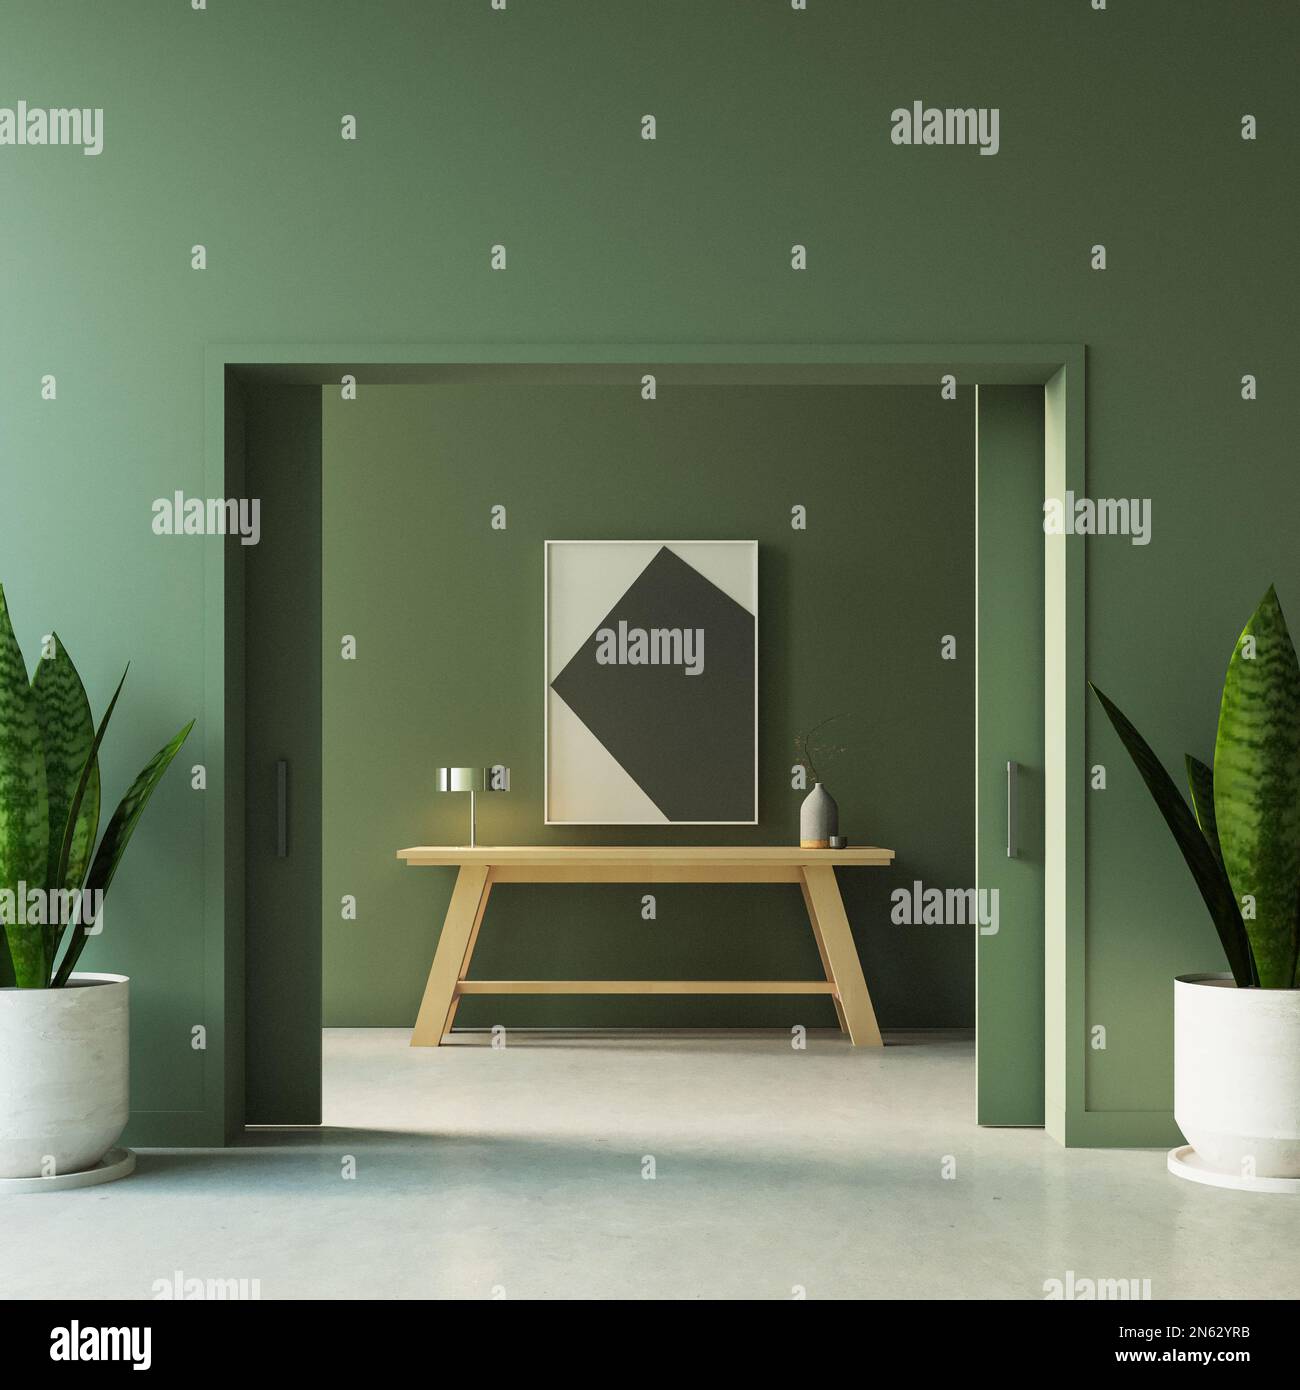 Foyer und Lobby mit grüner Wand - 3D-Jahre-Design Stockfoto